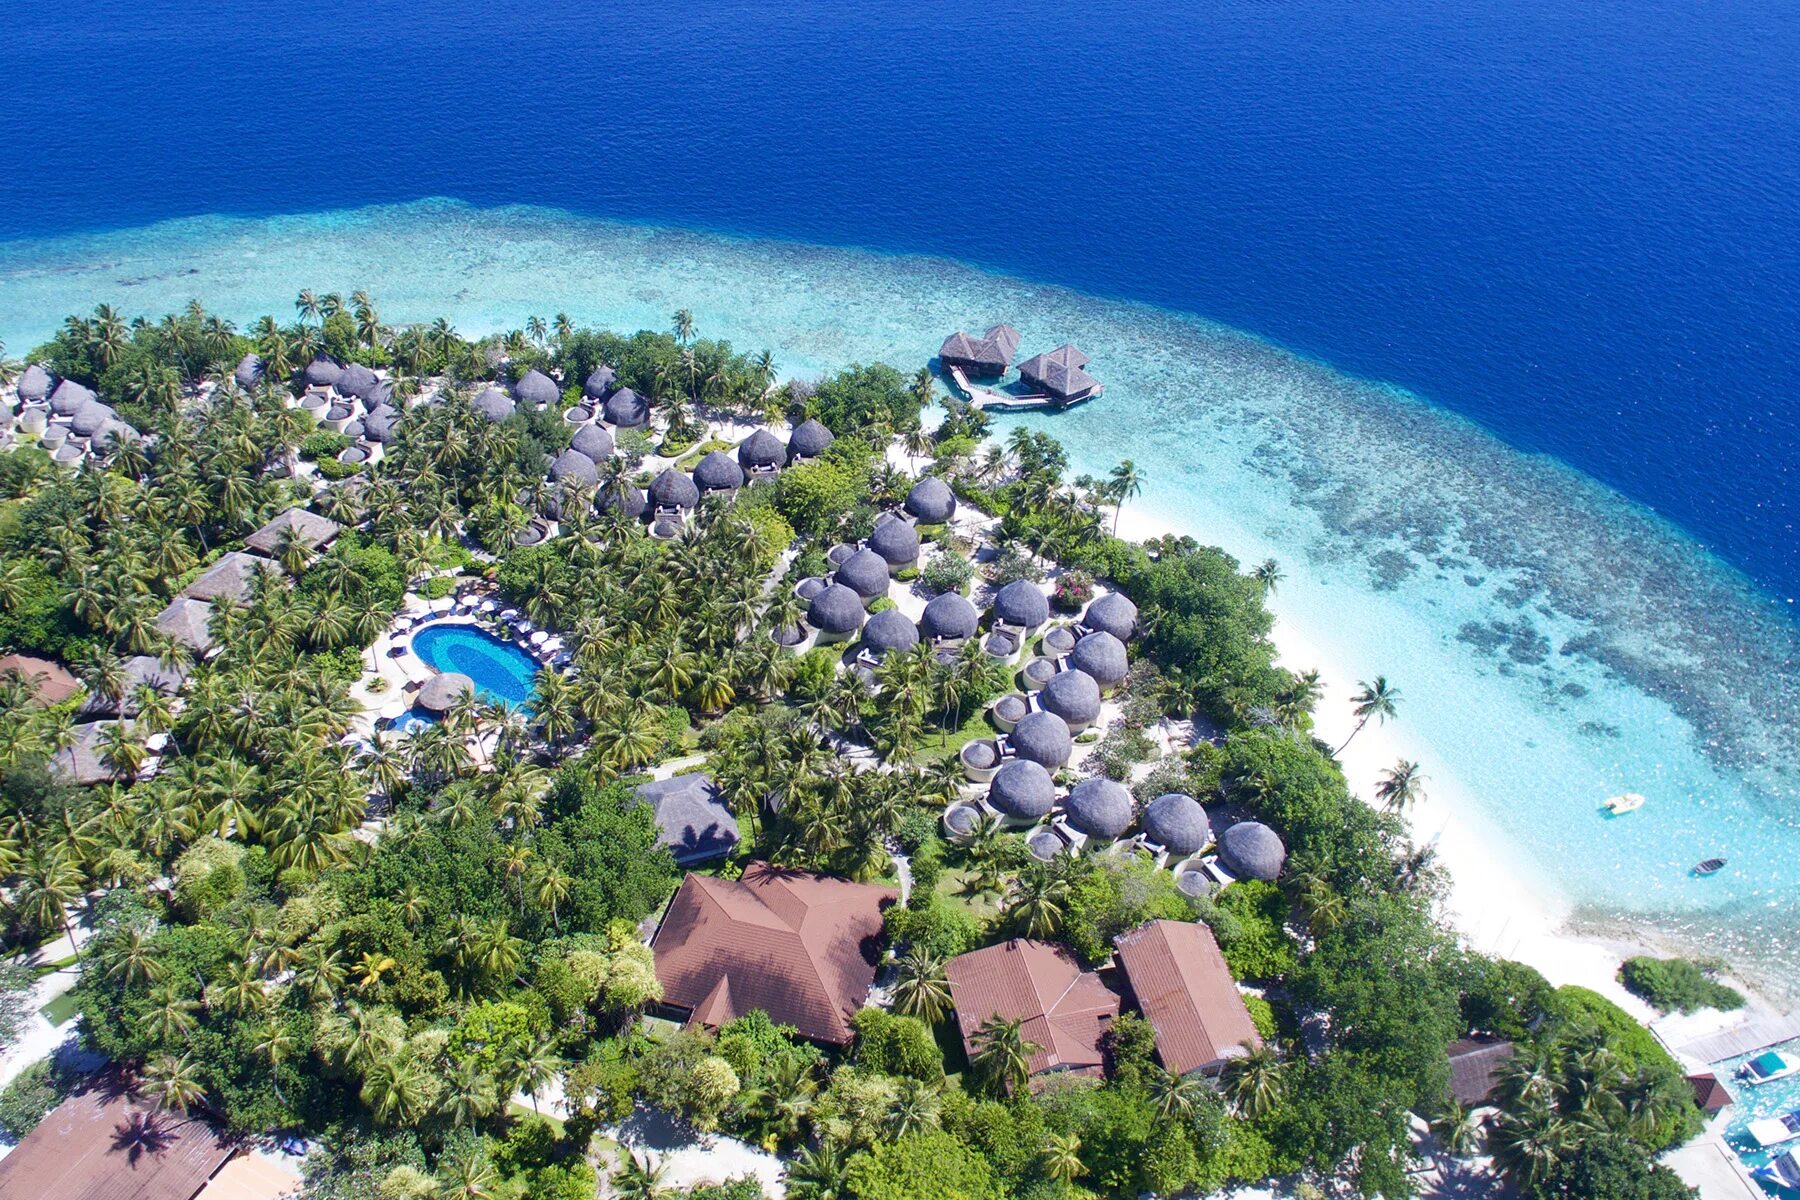 Отель Bandos Island Resort & Spa 4*. Остров Bandos Мальдивы. Bandos Maldives 4 Мальдивы. Bandos Maldives (ex. Bandos Island Resort) 4* Мальдивы,. Bandos island 4